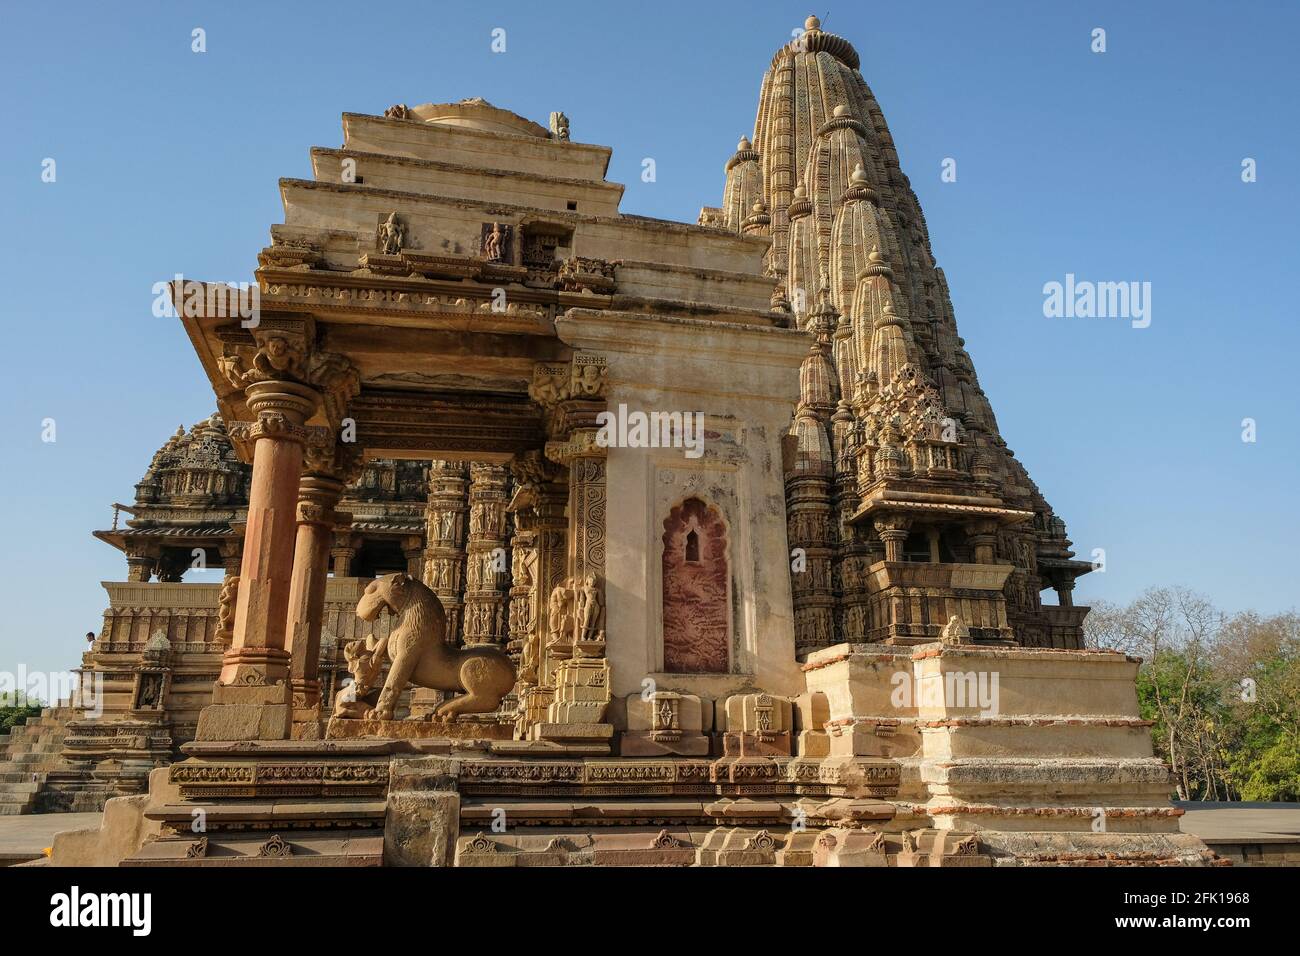 The Kandariya Mahadev Temple and the Mahadeva Temple in Khajuraho, Madhya Pradesh, India. Forms part of the Khajuraho Group of Monuments. Stock Photo